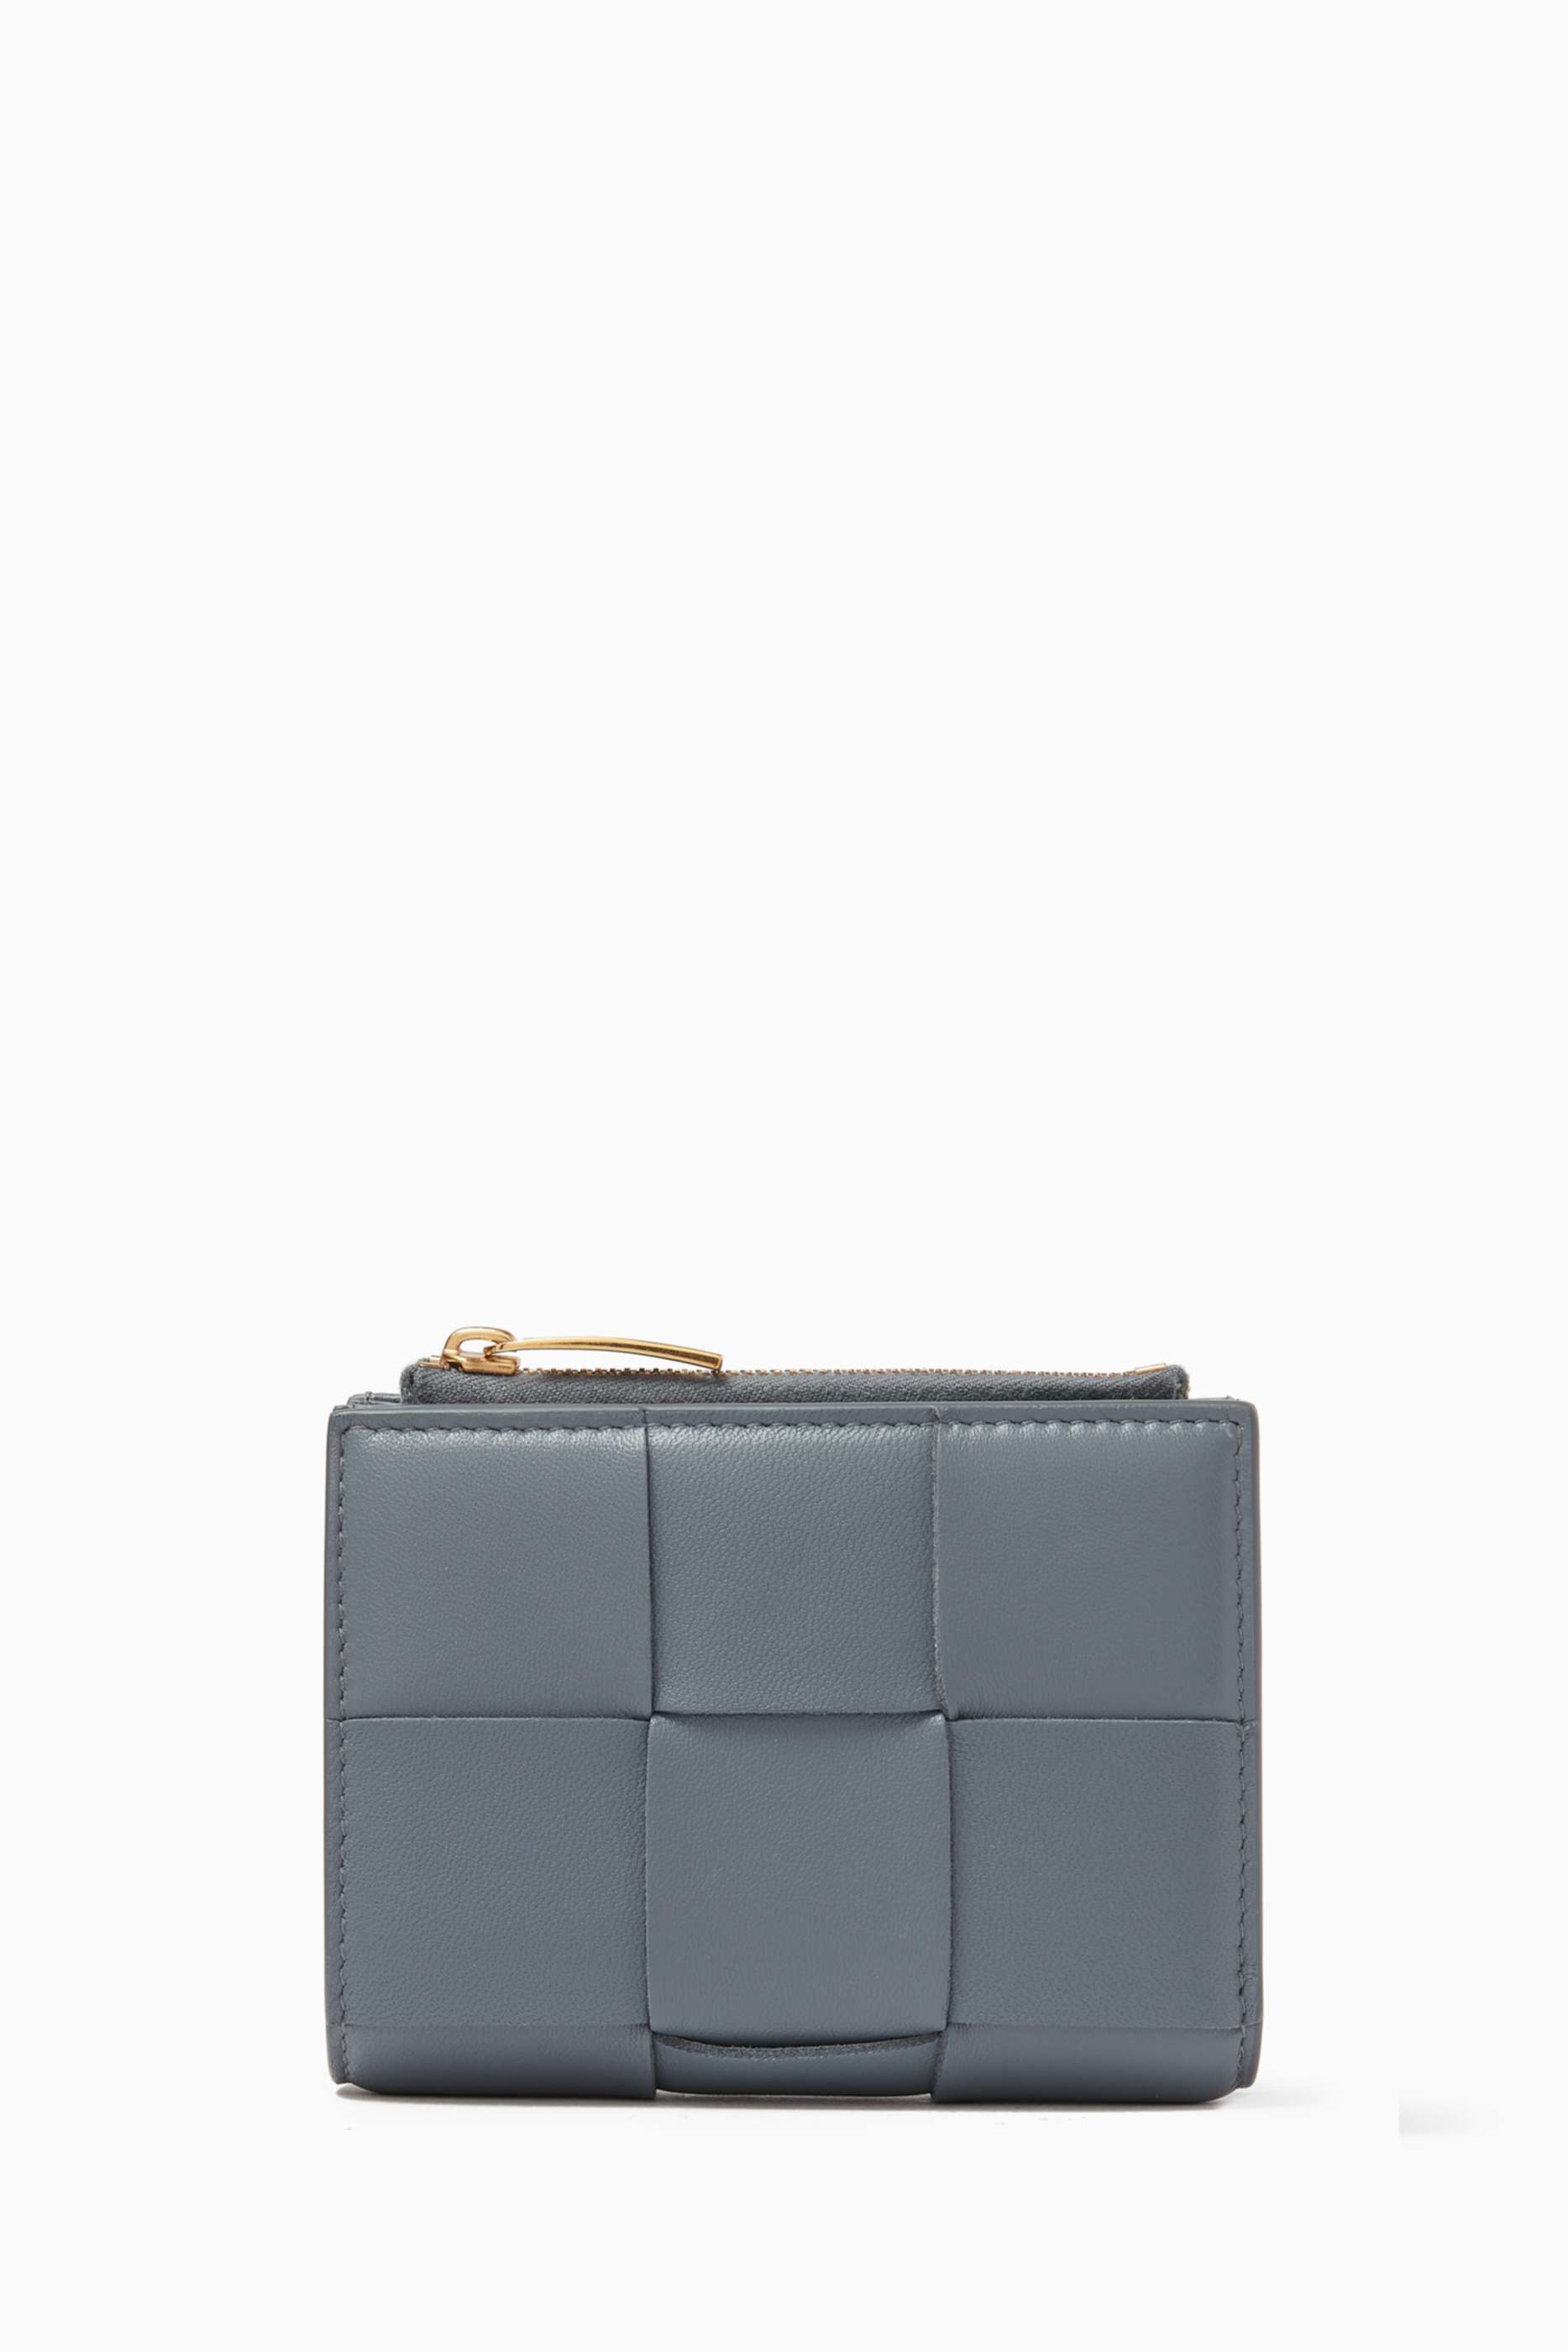 shop-bottega-veneta-bi-fold-wallet-in-intrecciato-nappa-leather-for-women